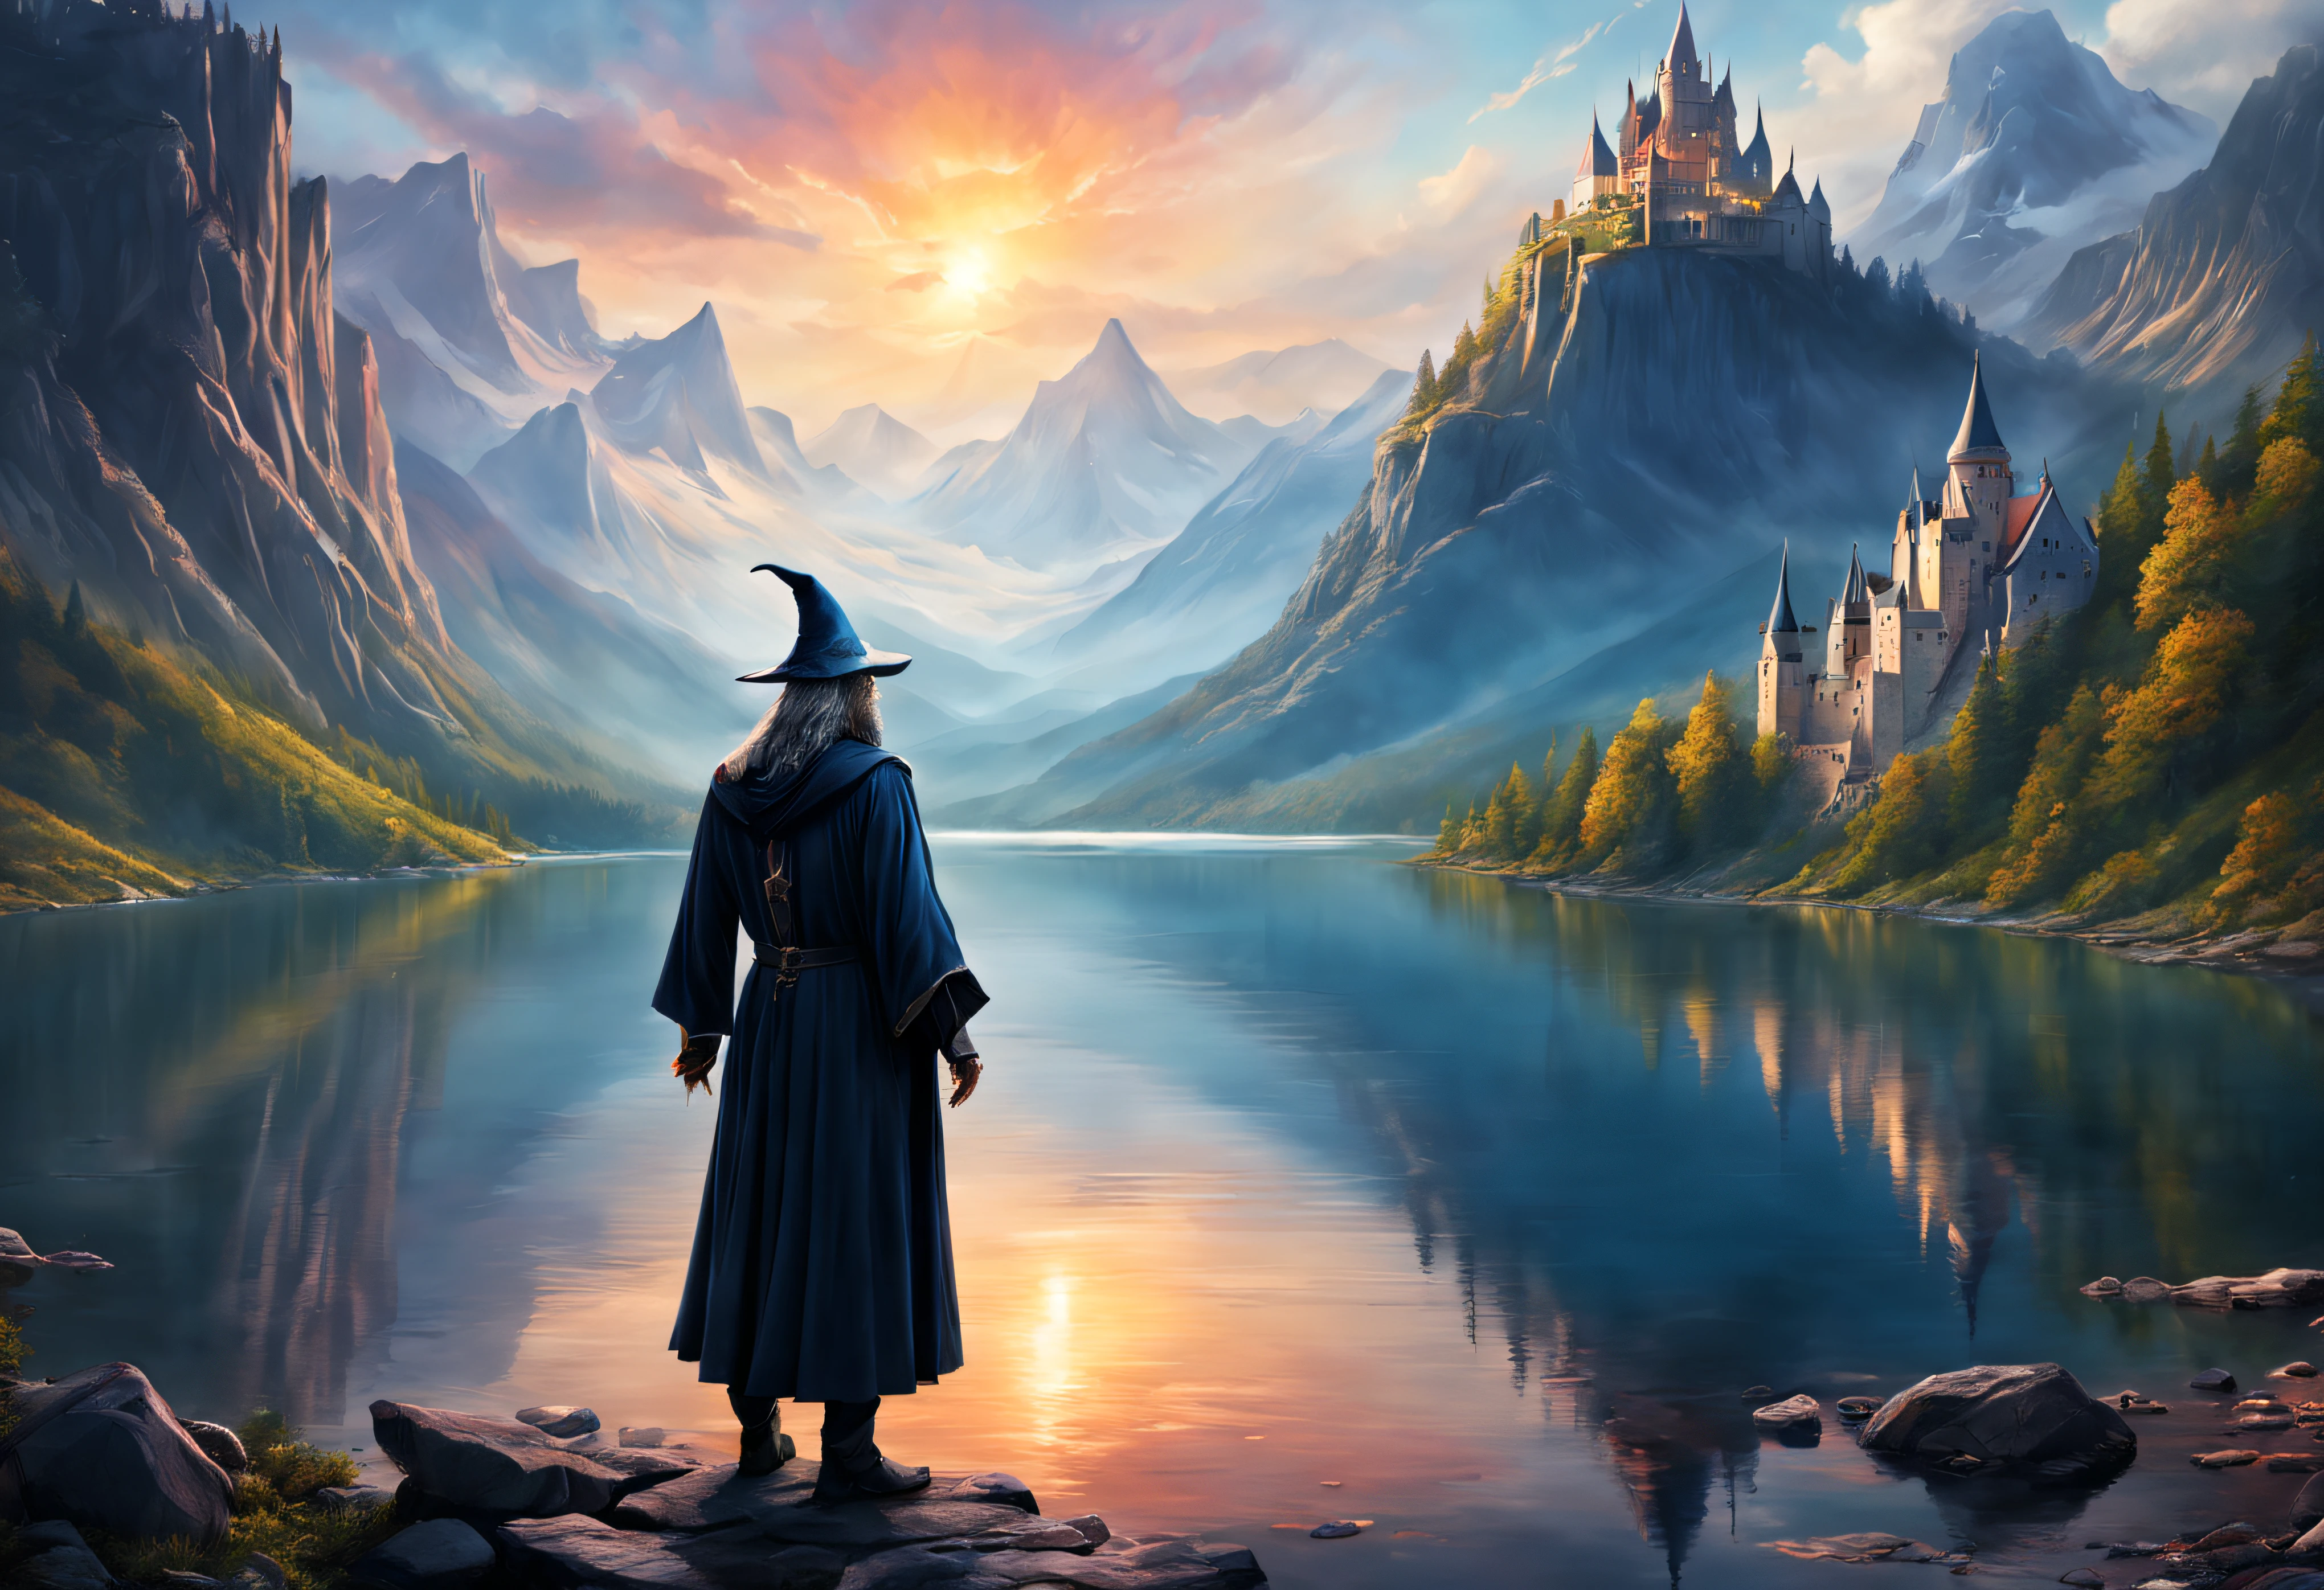 Ein Fantasy-Kunst-Porträt eines mächtigen Zauberers, der über einen See auf eine Burg in den Bergen blickt.